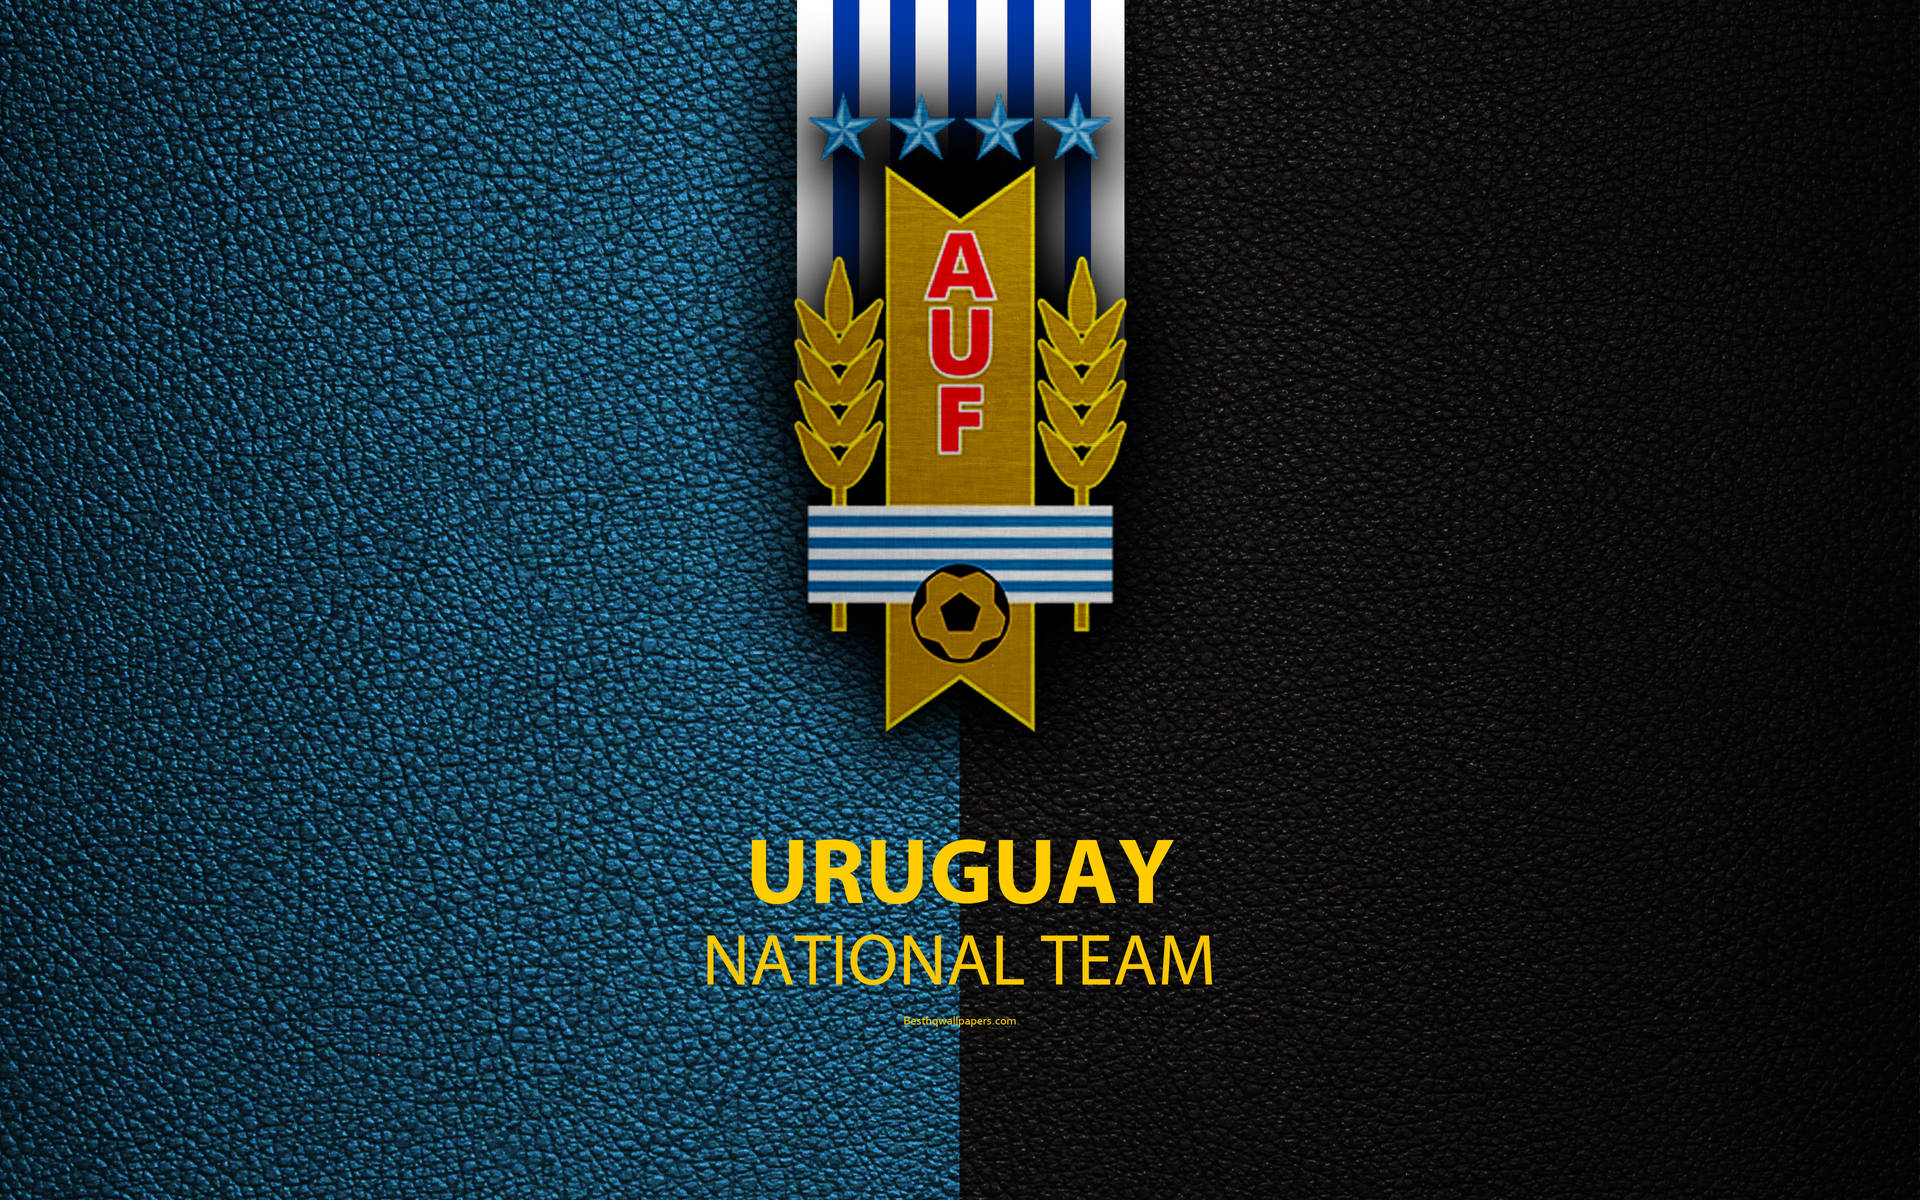 Uruguay National Team Football Logo